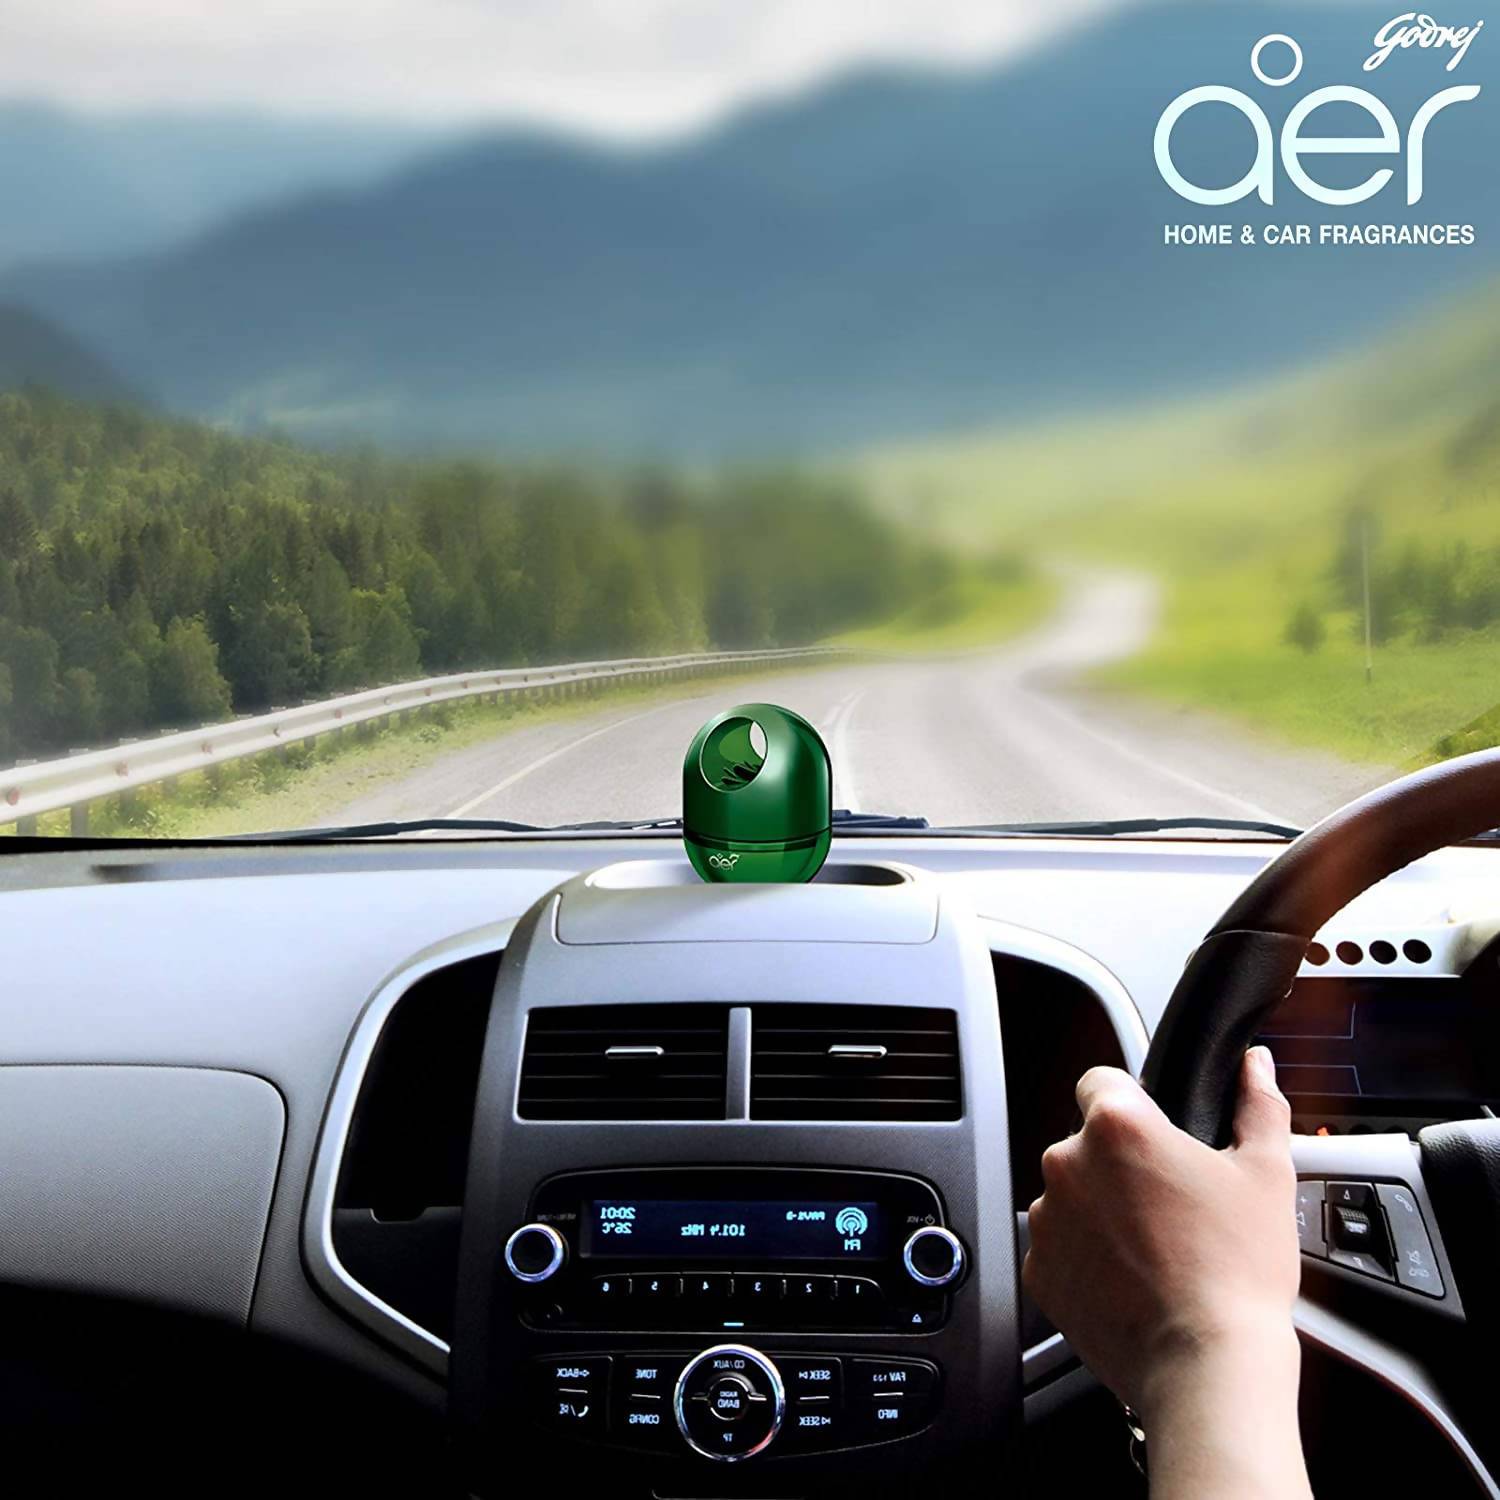 Godrej aer twist, Car Air Freshener - Fresh Forest Drizzle (45g)